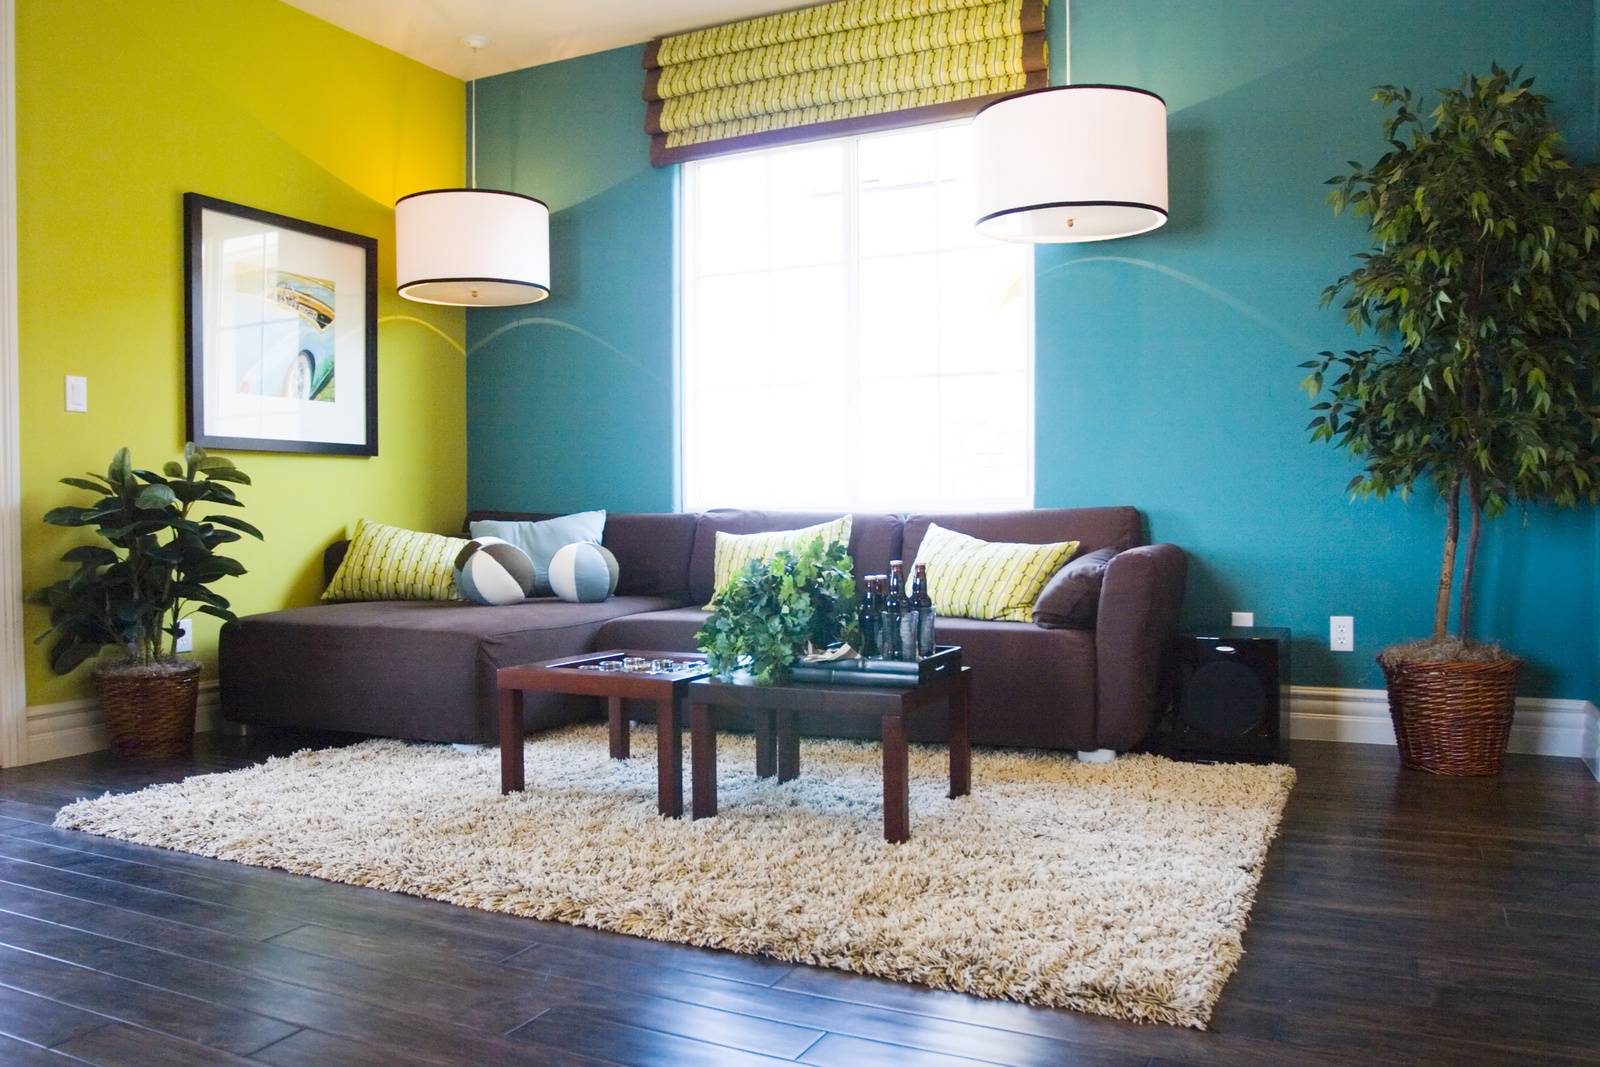 Цвет стен в интерьере — выбор основы и сочетание со стилем и дизайном всей квартиры (105 фото)